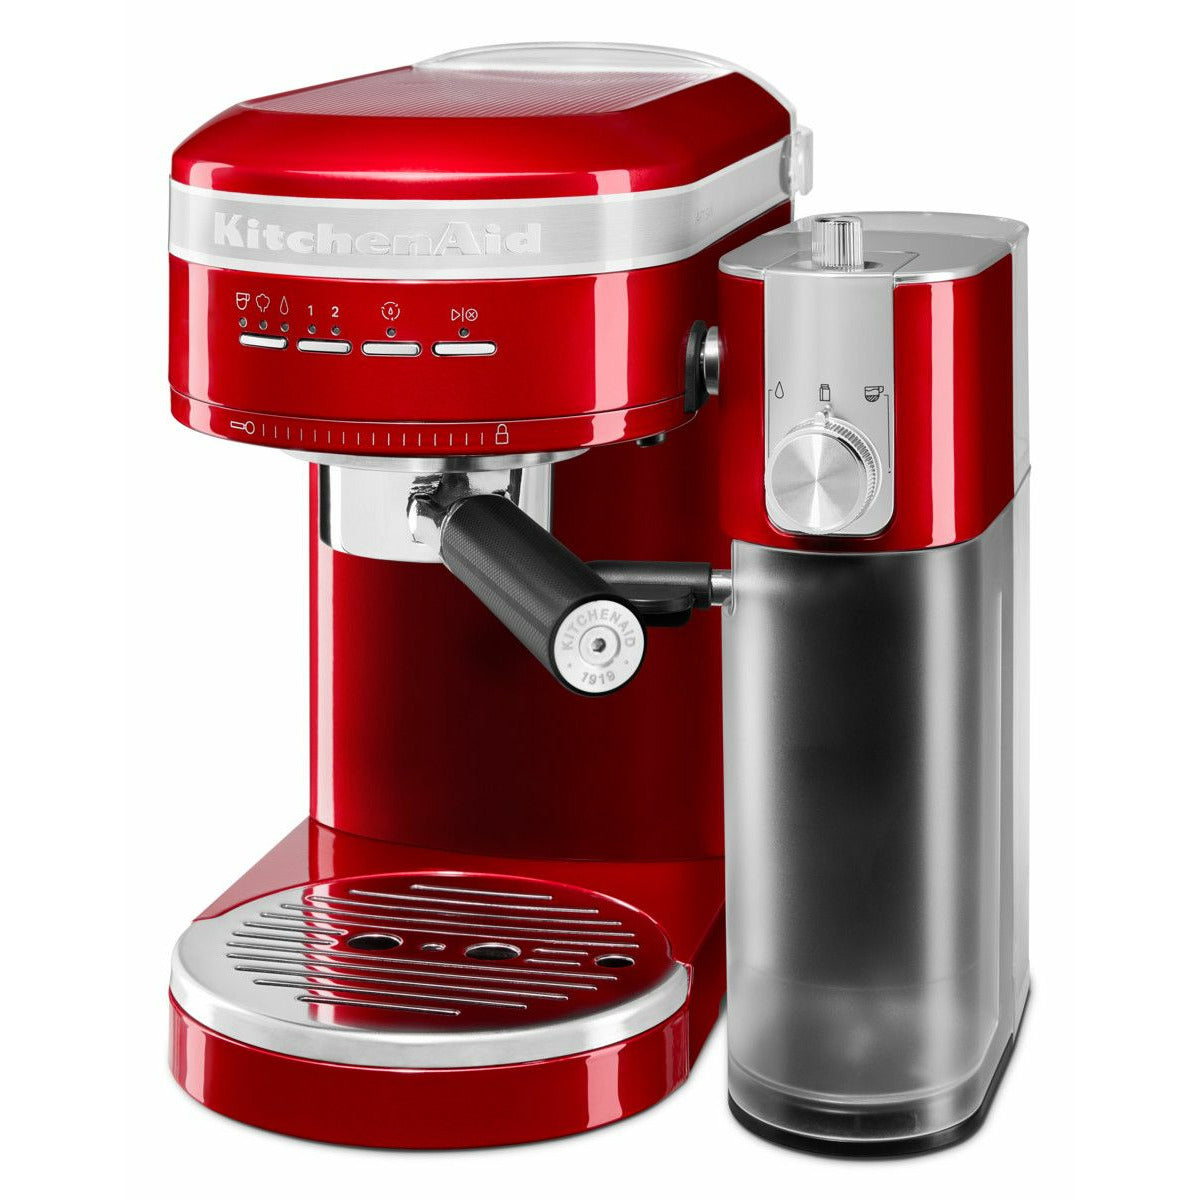 KitchenAid 5KES6503 Artisan Espresso Machine, Red Metallic